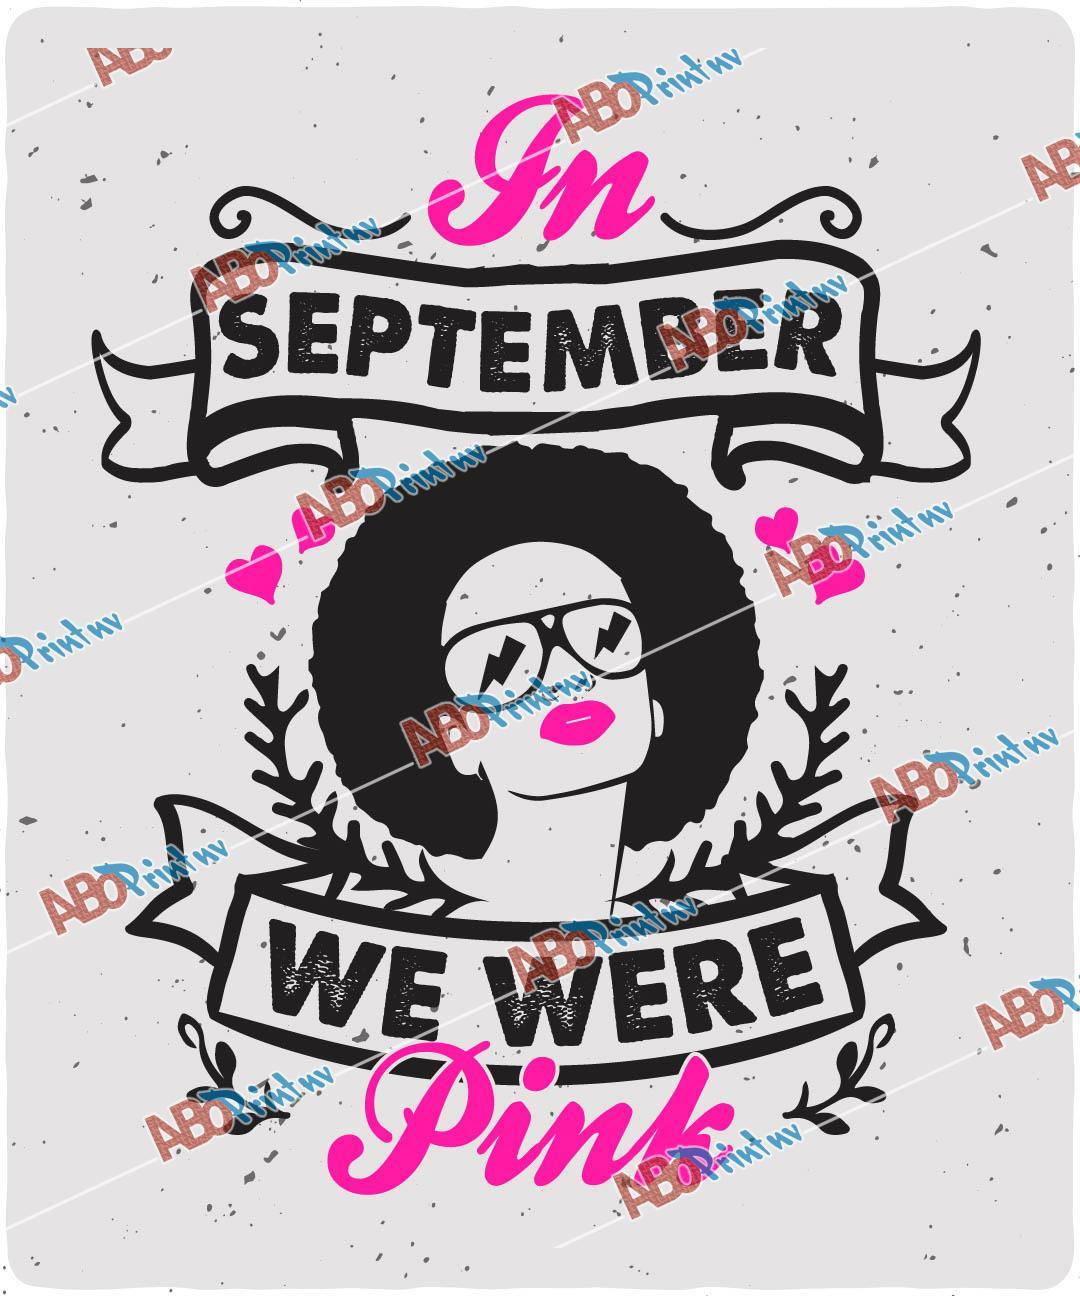 In September we were pink.jpg